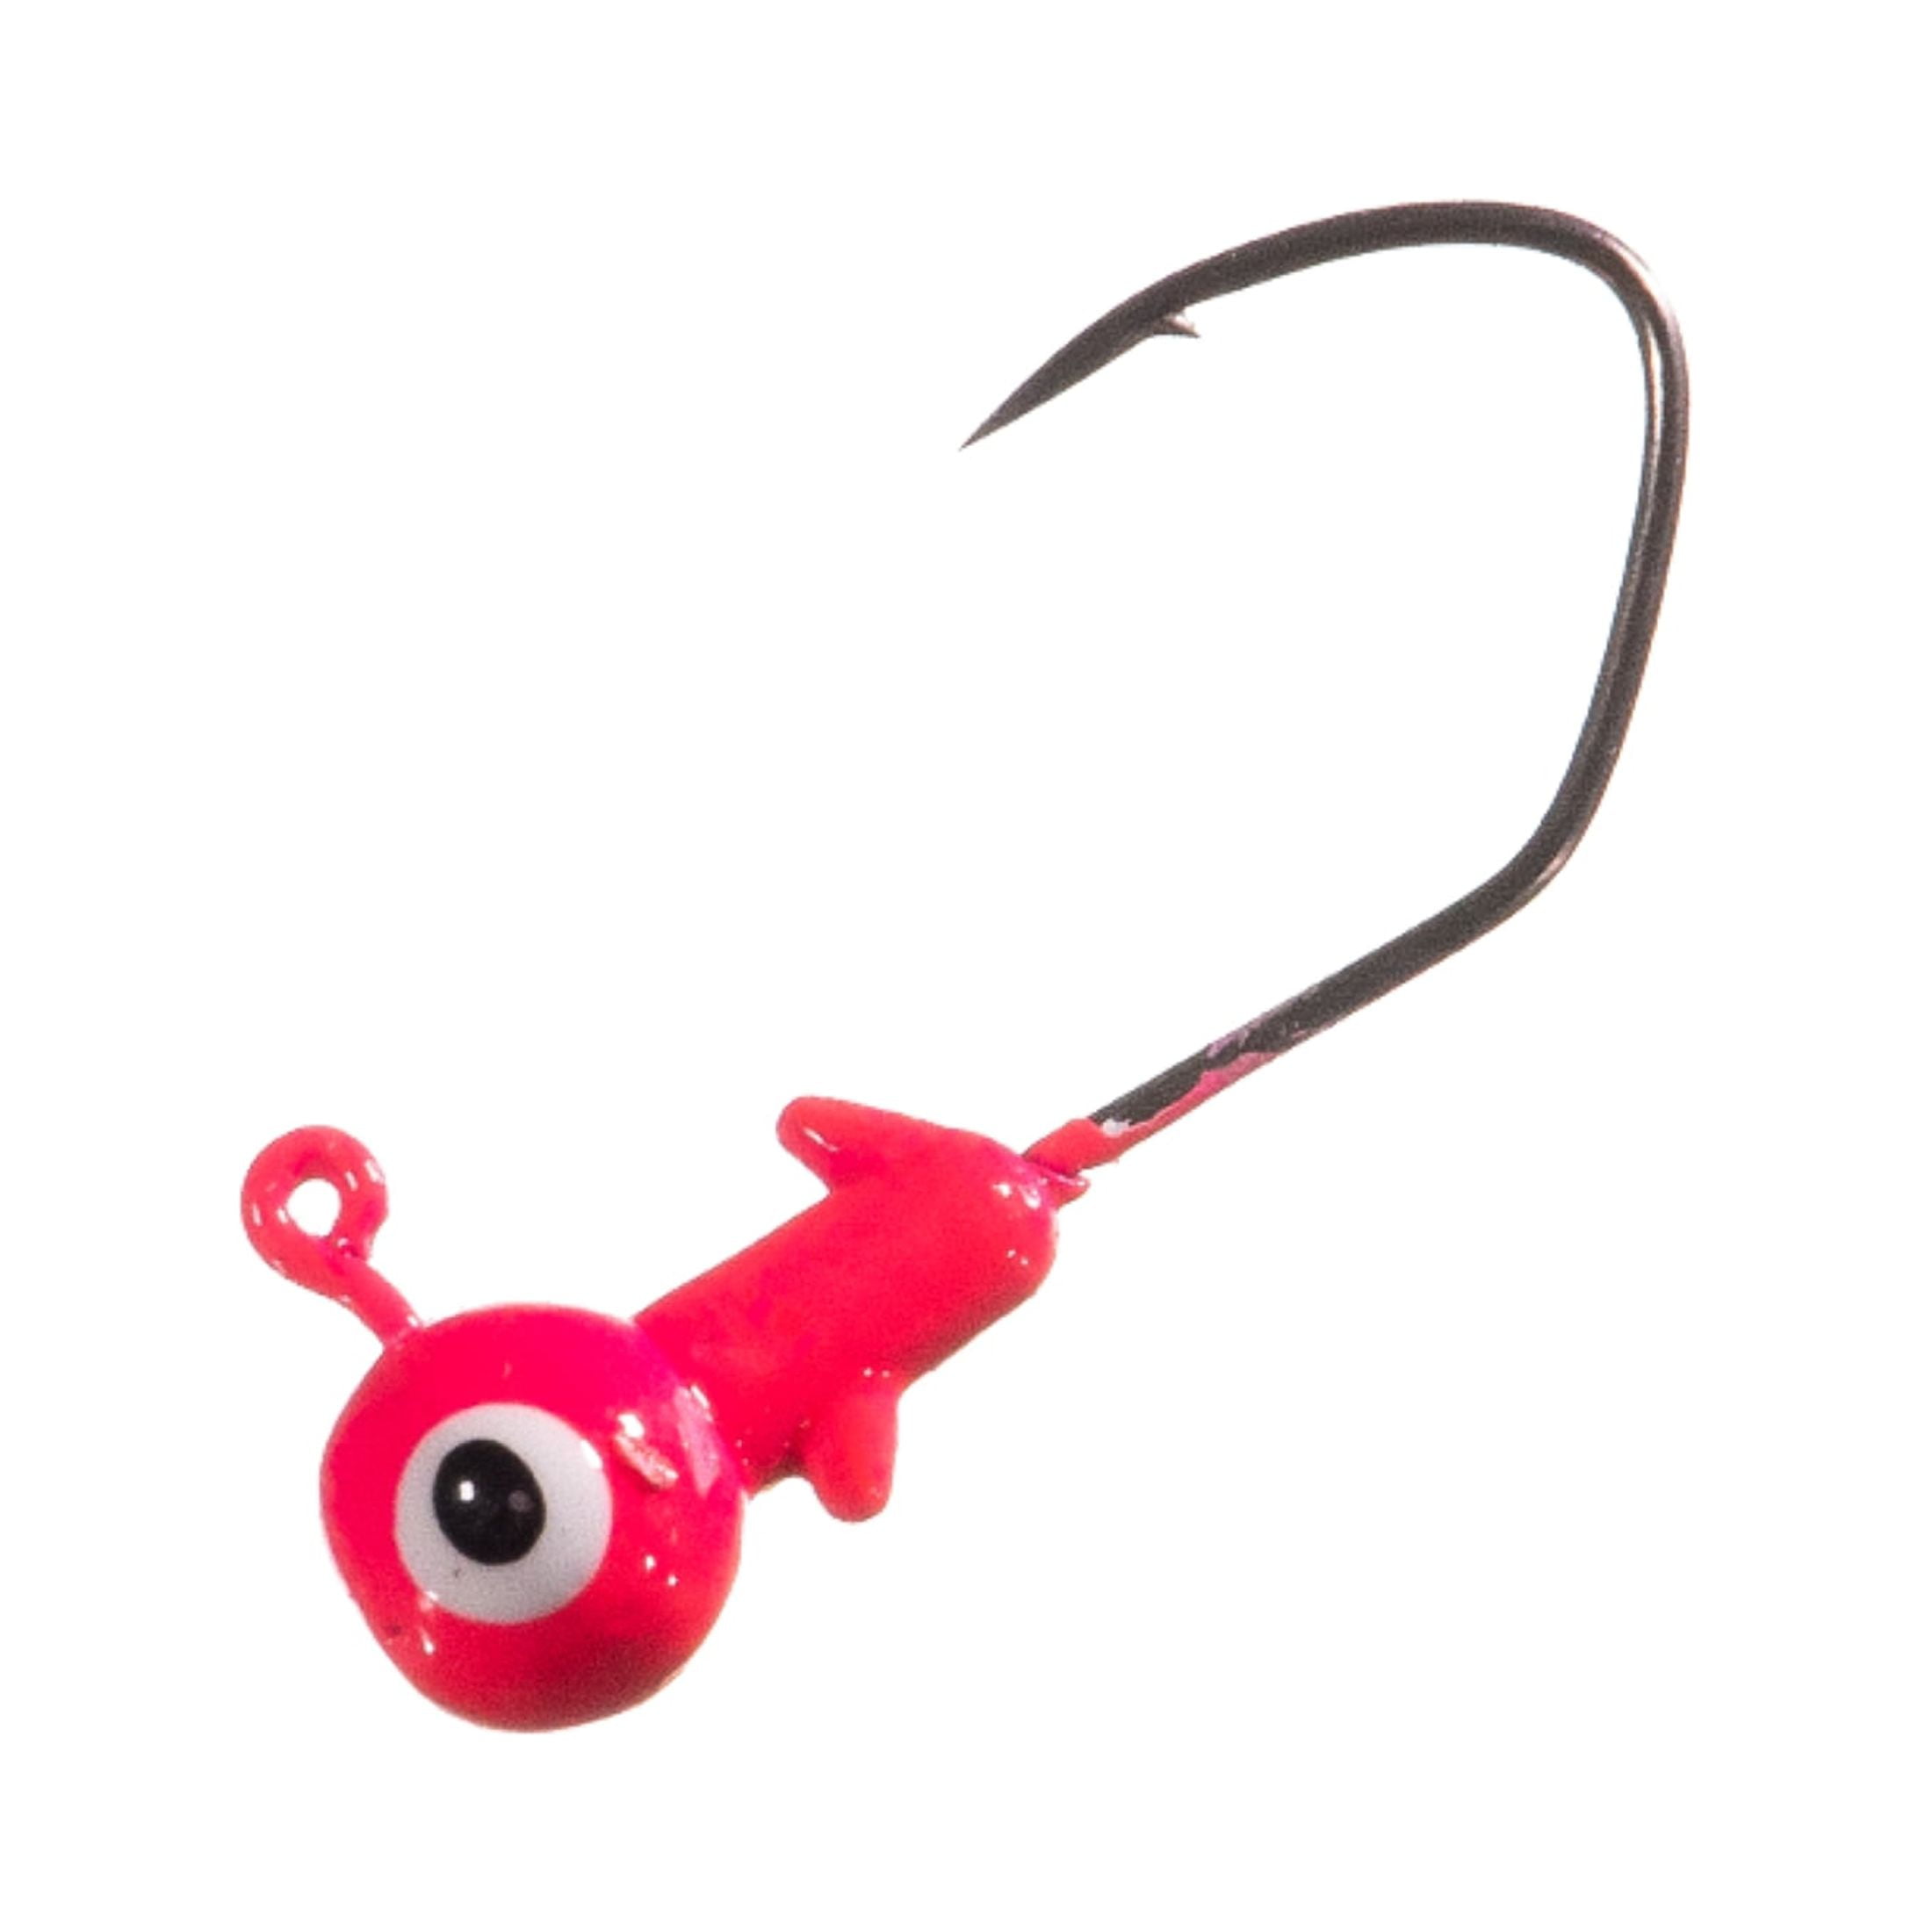 Arkie Lures Pro Model Sickle Hook Jig Head, Pink, 1/8 oz 